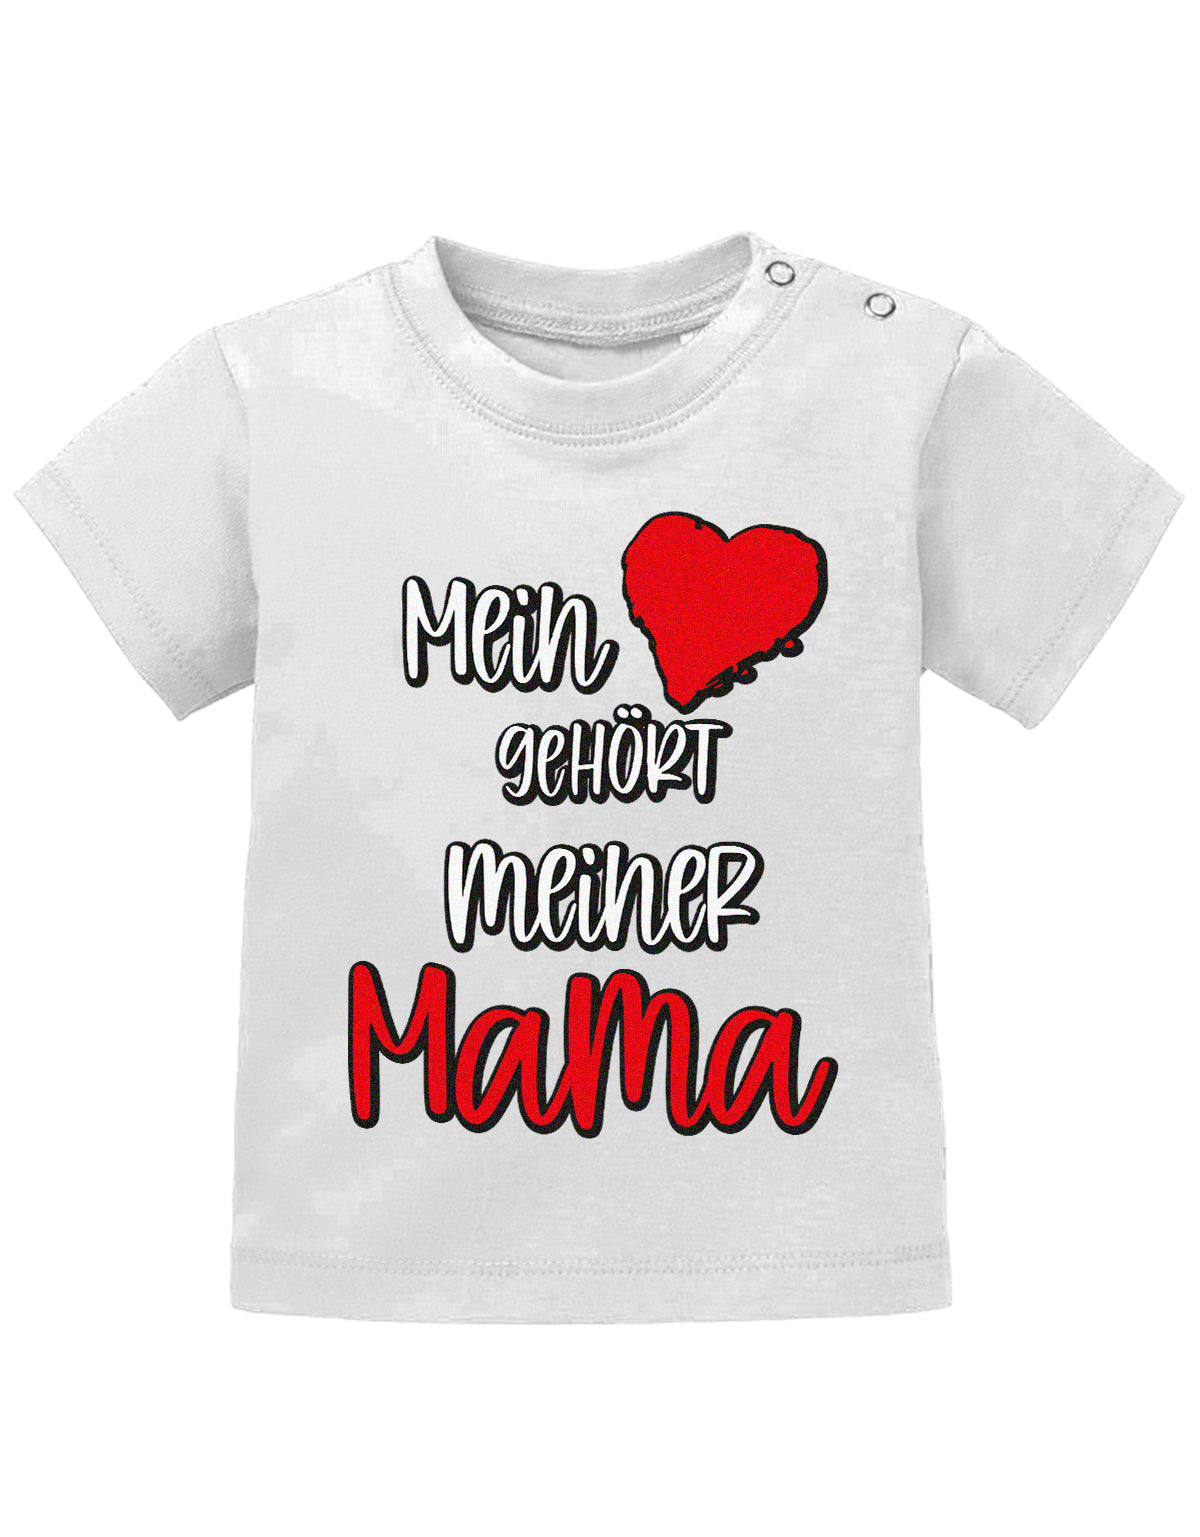 Mama Spruch Baby Shirt. Mein Herz gehört meiner Mama. Weiss